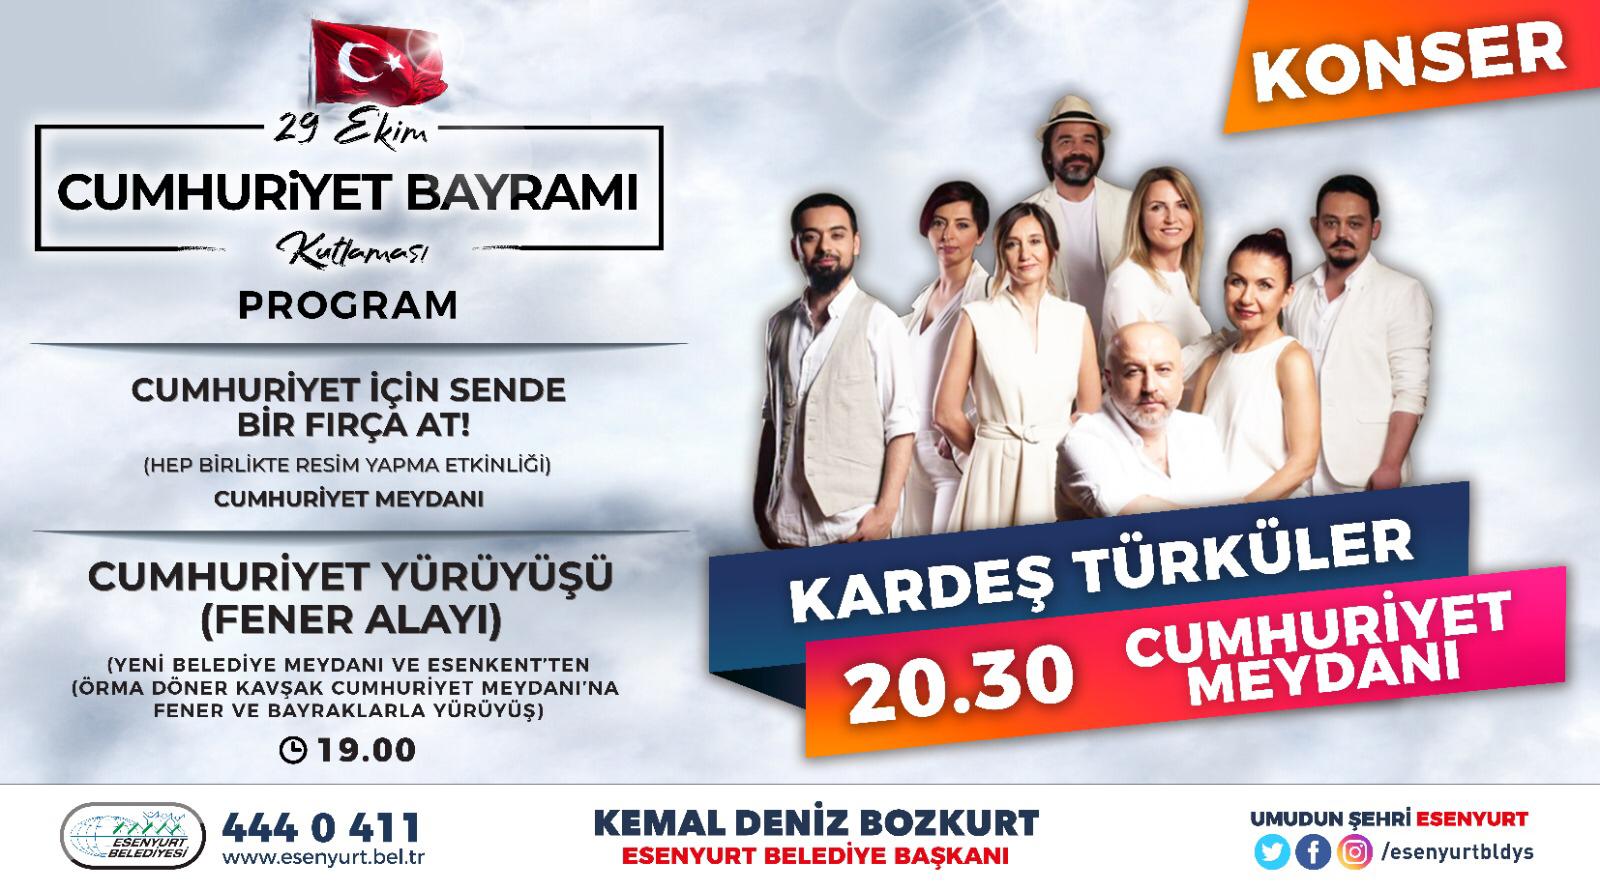 29 ekim cumhuriyet bayrami kutlamasi kardes turkuler konseri etkinlikler